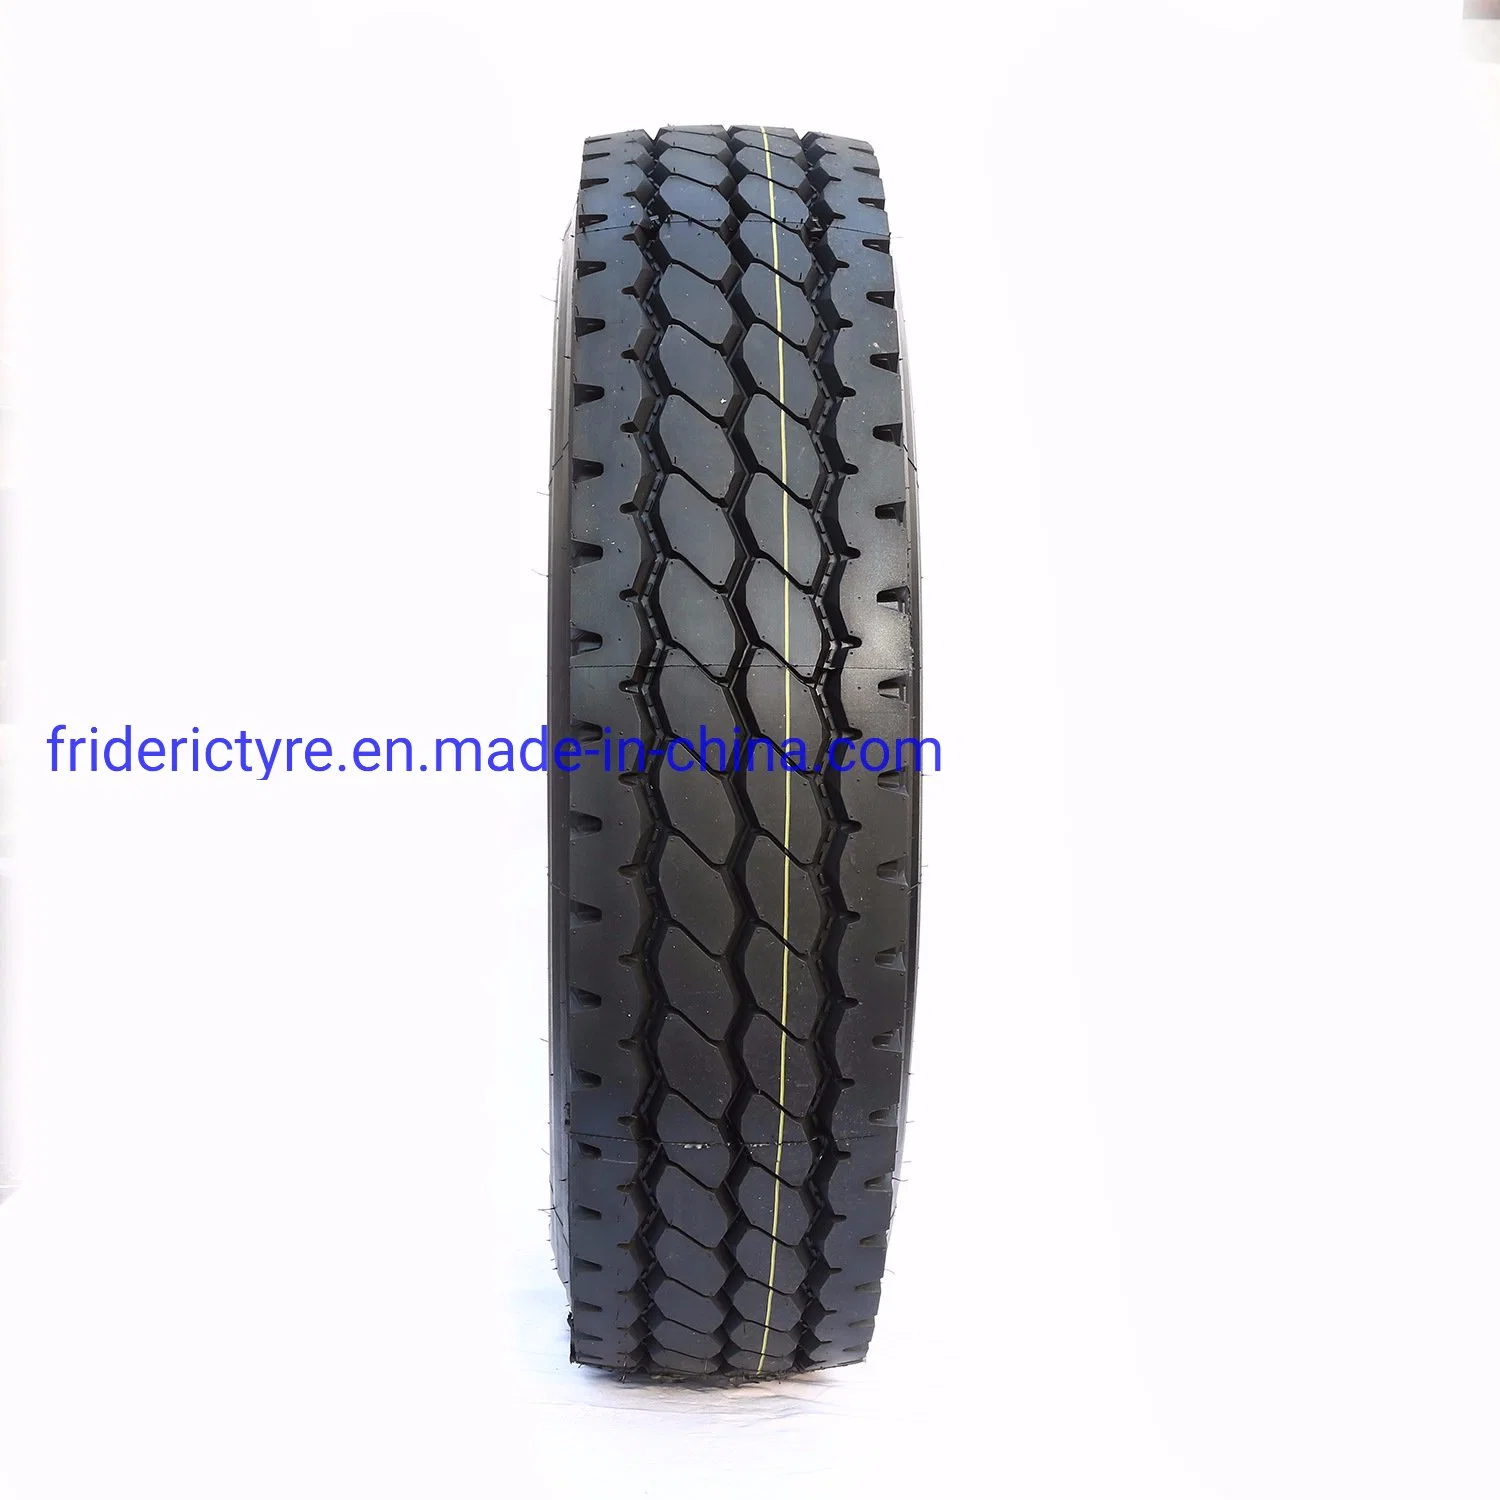 12r22.5 de la marca china de alta calidad Frideric mejor precio neumáticos para camiones